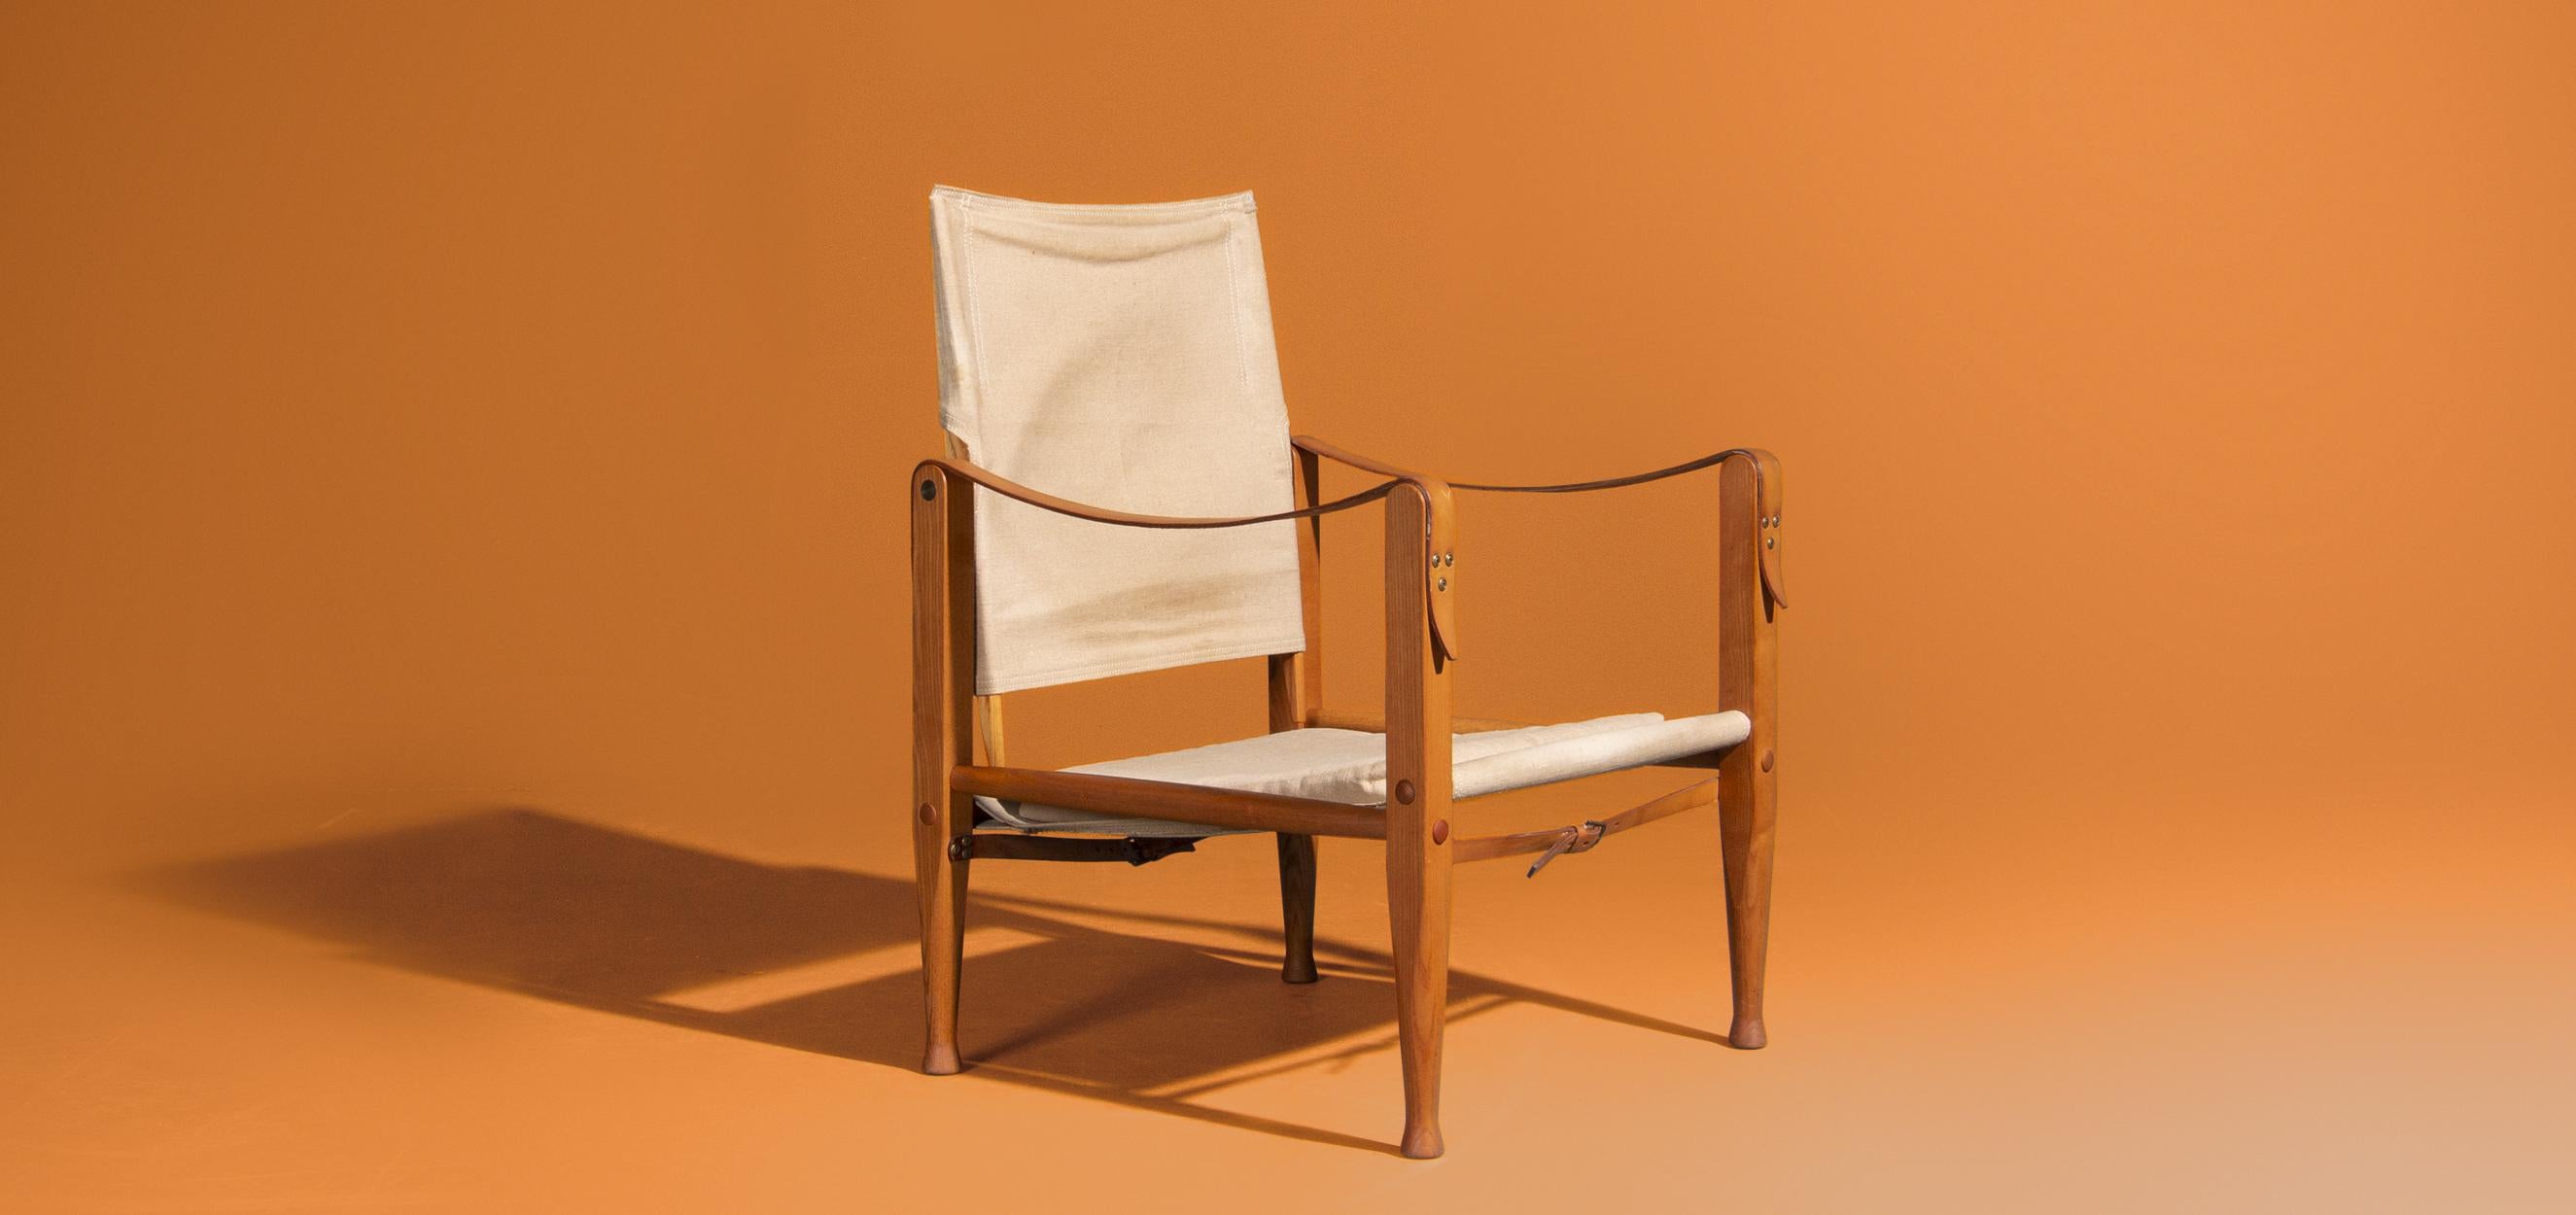 Der Stuhl Safari wurde in den 1930er Jahren von Kaare Klint entworfen. Dieser Safaristuhl wird von Rud Rasmussen in Dänemark hergestellt. Dies ist das erste Design, bei dem für den Auf- und Abbau der Stühle kein Werkzeug benötigt wird. Die Rahmen